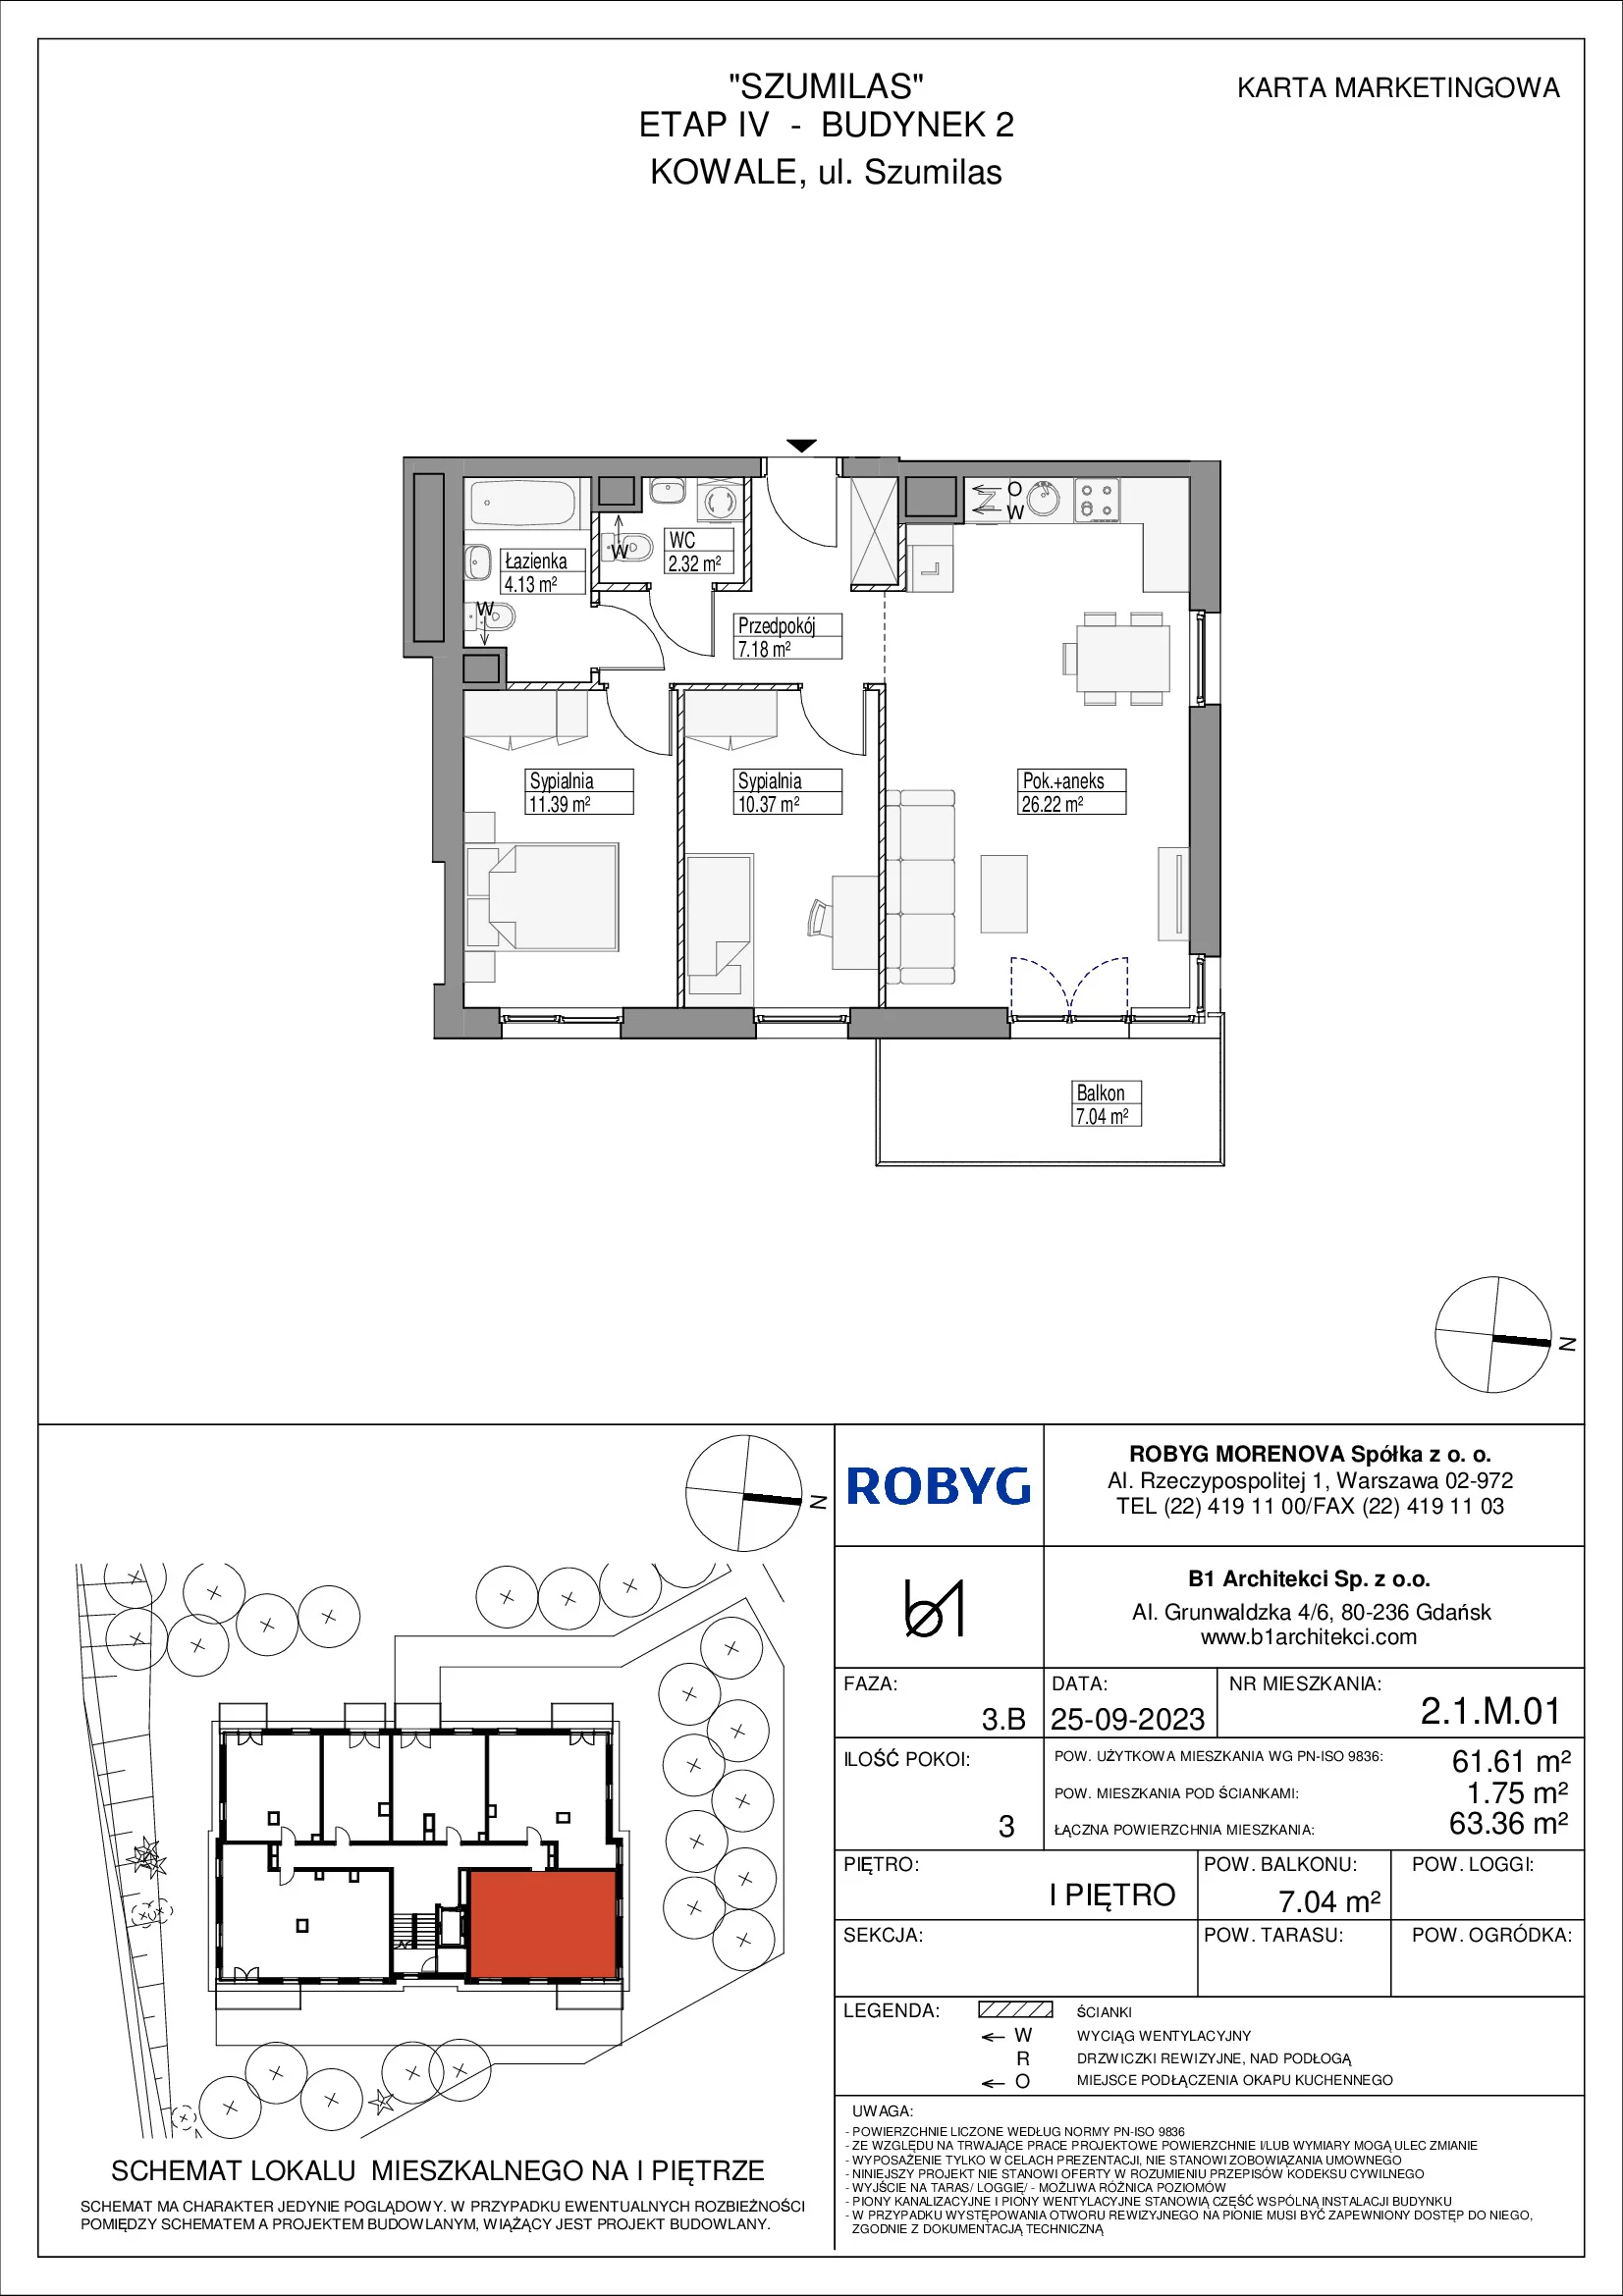 Mieszkanie 61,61 m², piętro 1, oferta nr 2.1M01, Szumilas, Kowale, ul. Magazynowa